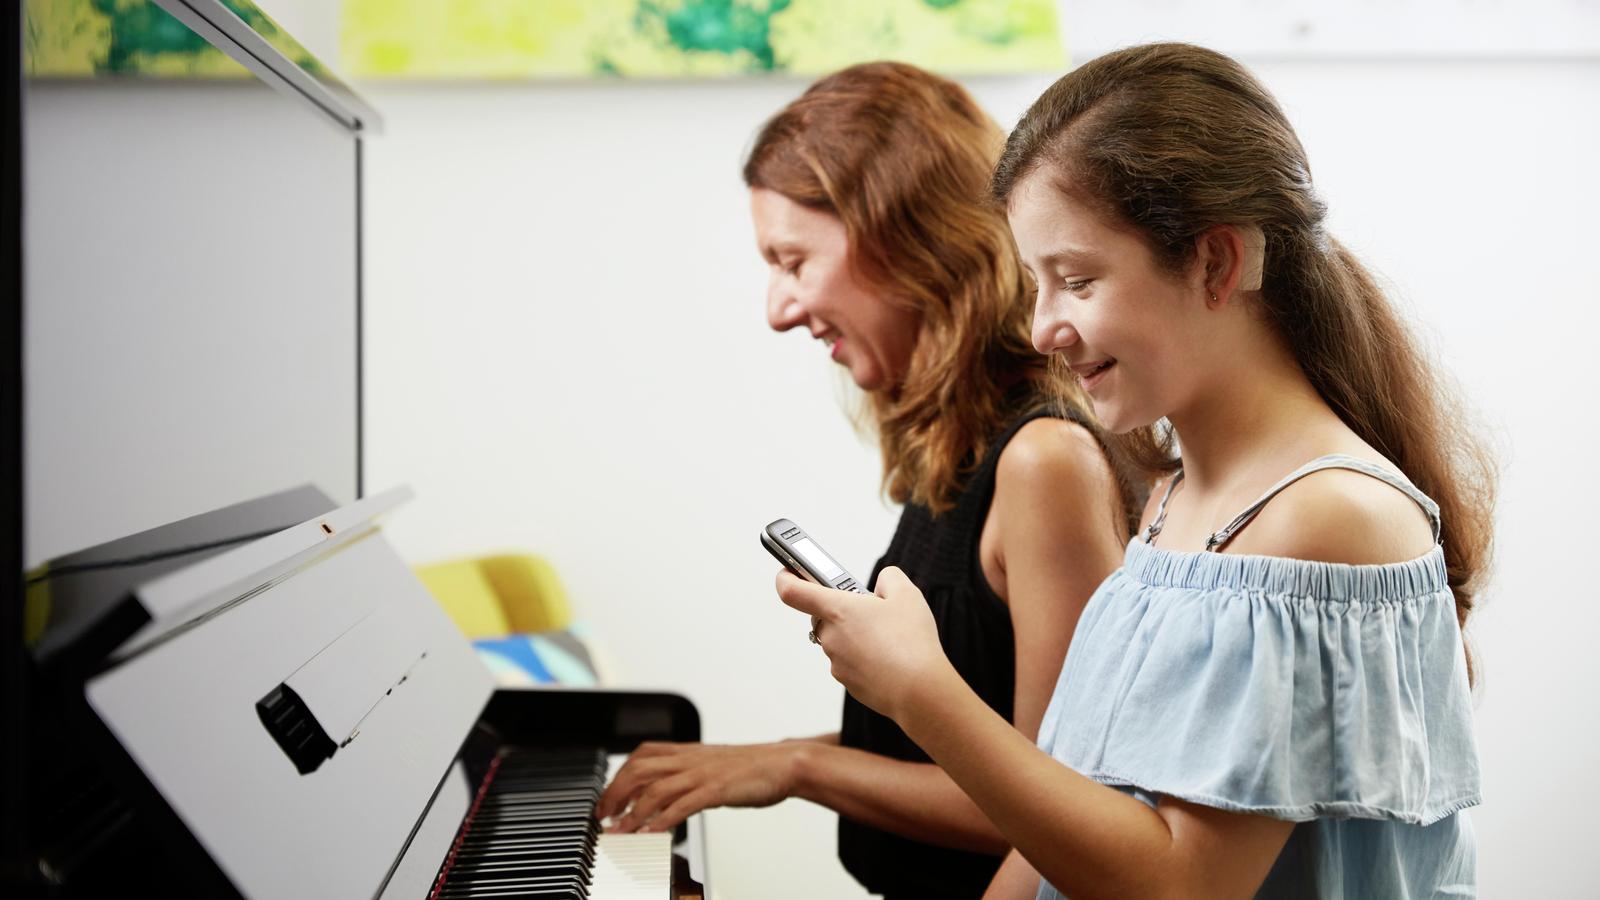 فتاة يافعة تستخدم ميكروفون ووالدتها تعزف على البيانو